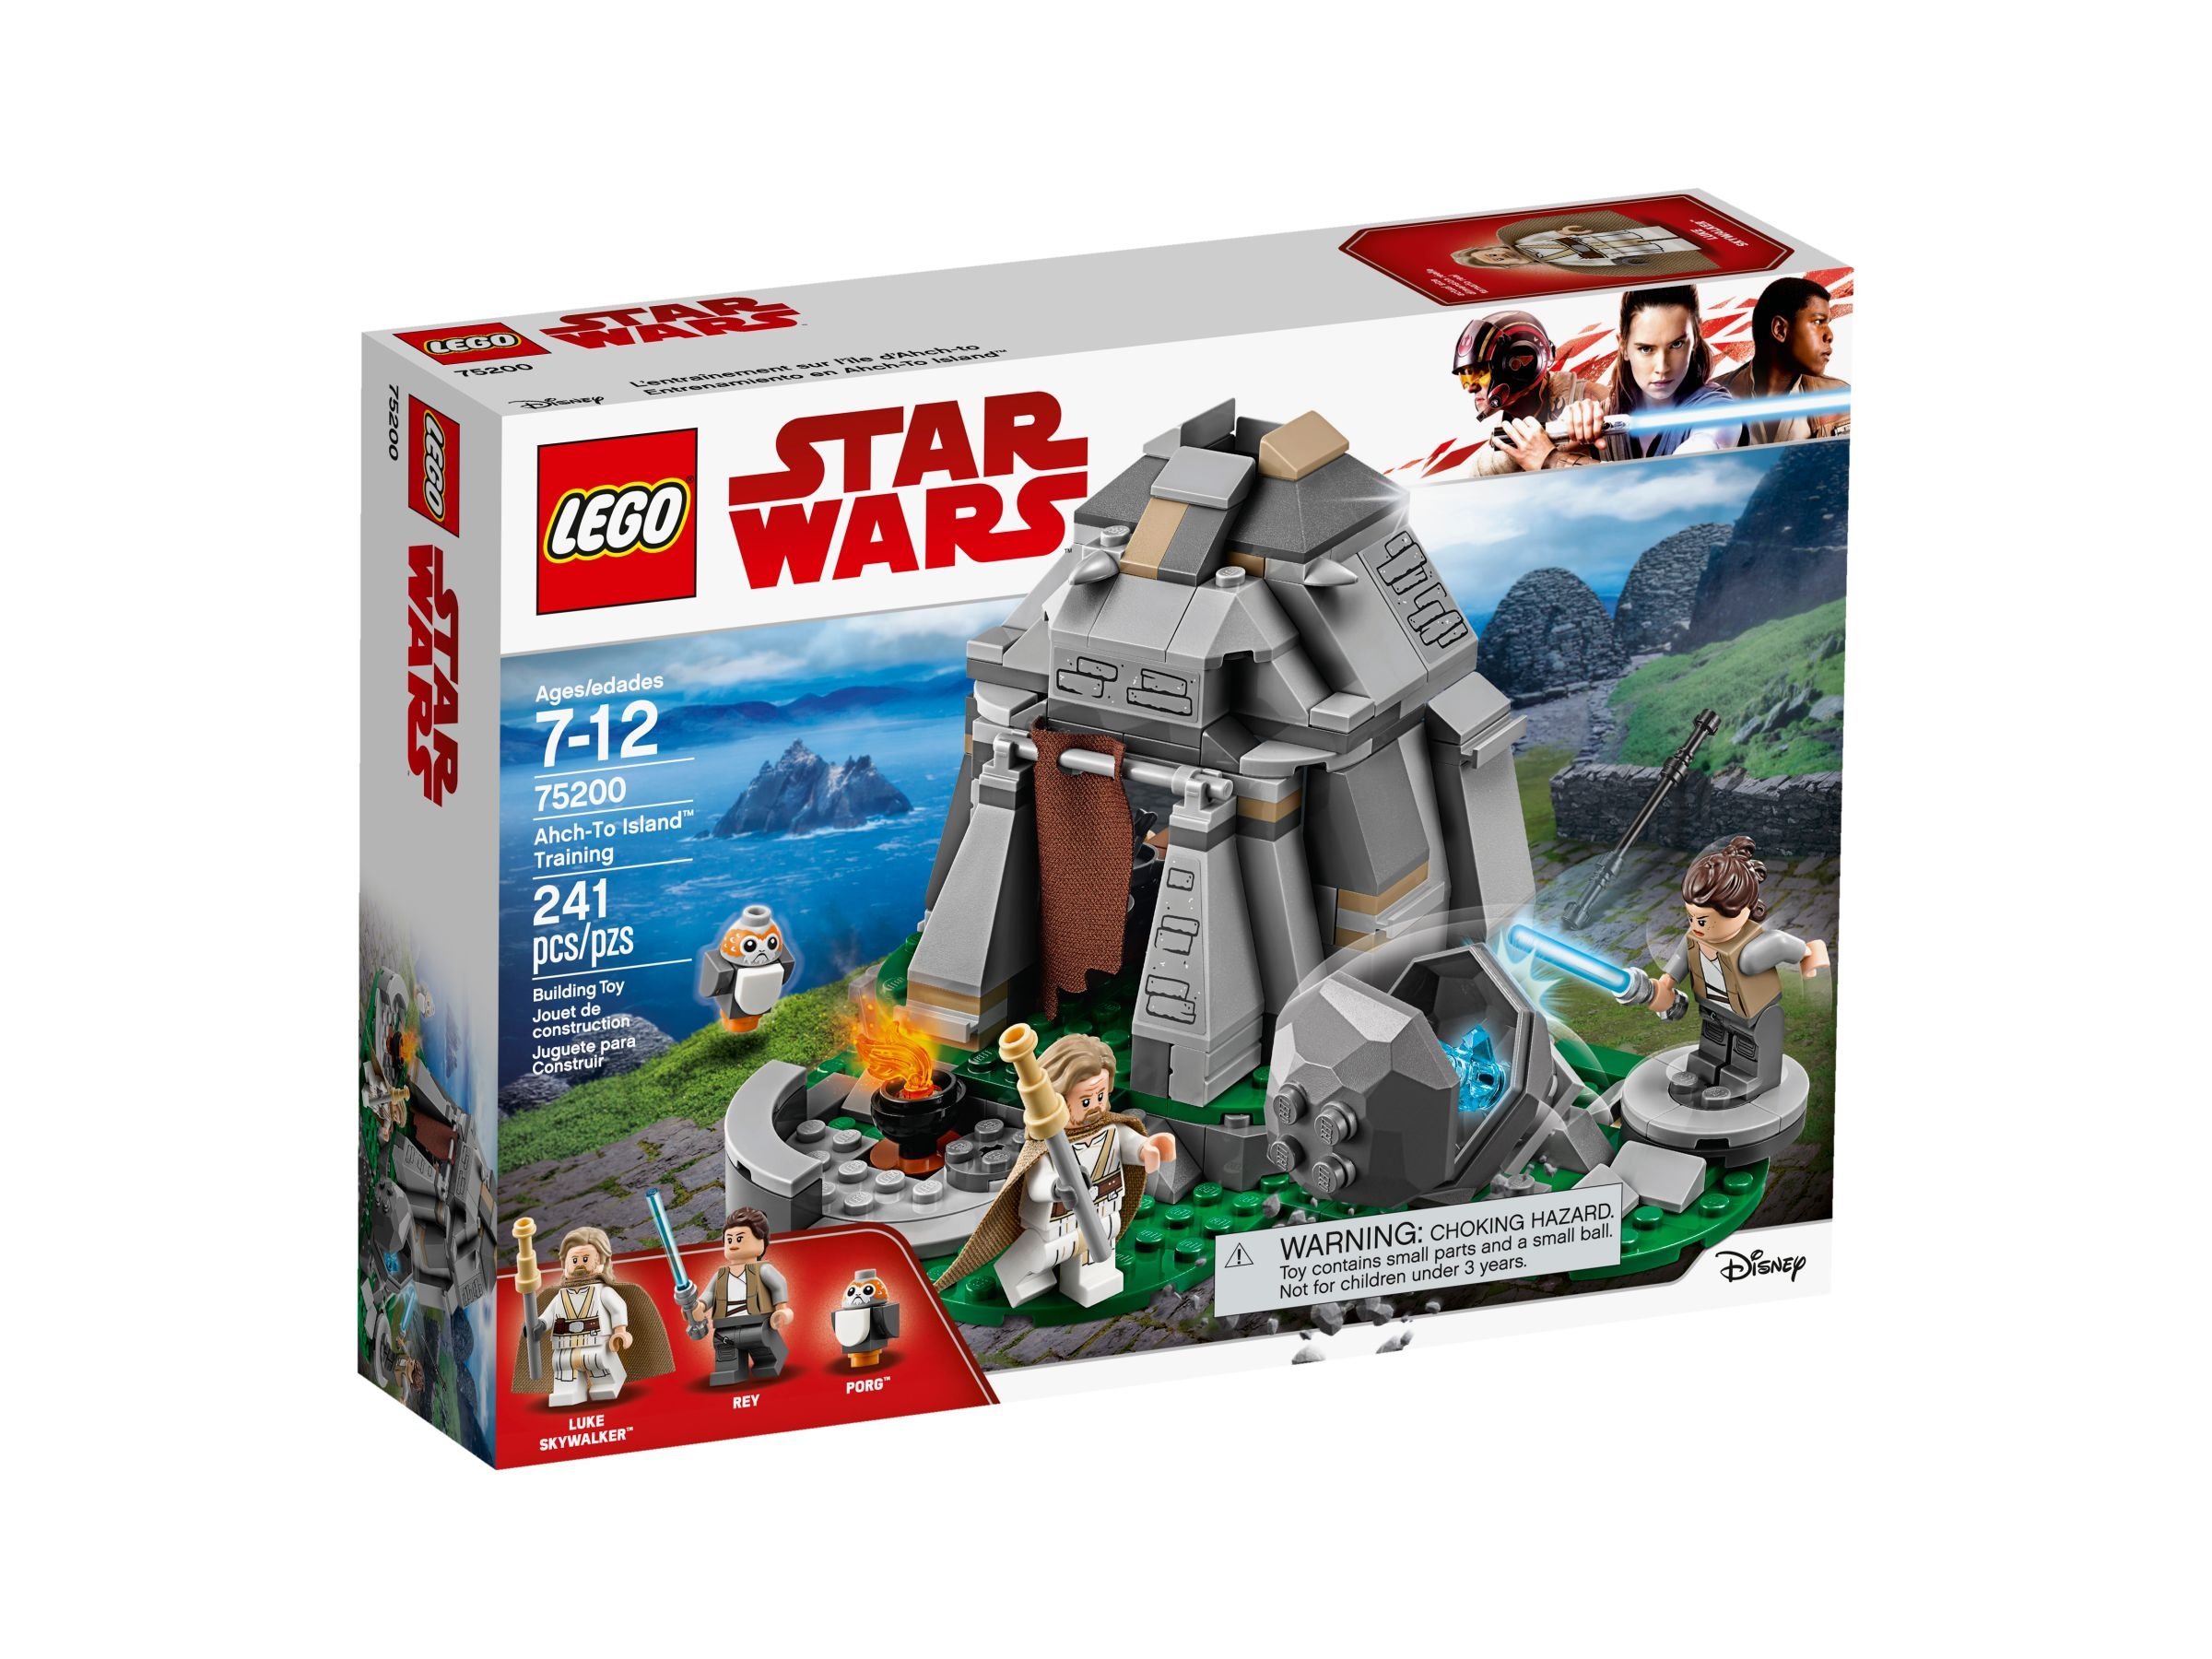 LEGO Star Wars 75200 Ahch-To Island™ Training LEGO_75200_alt1.jpg